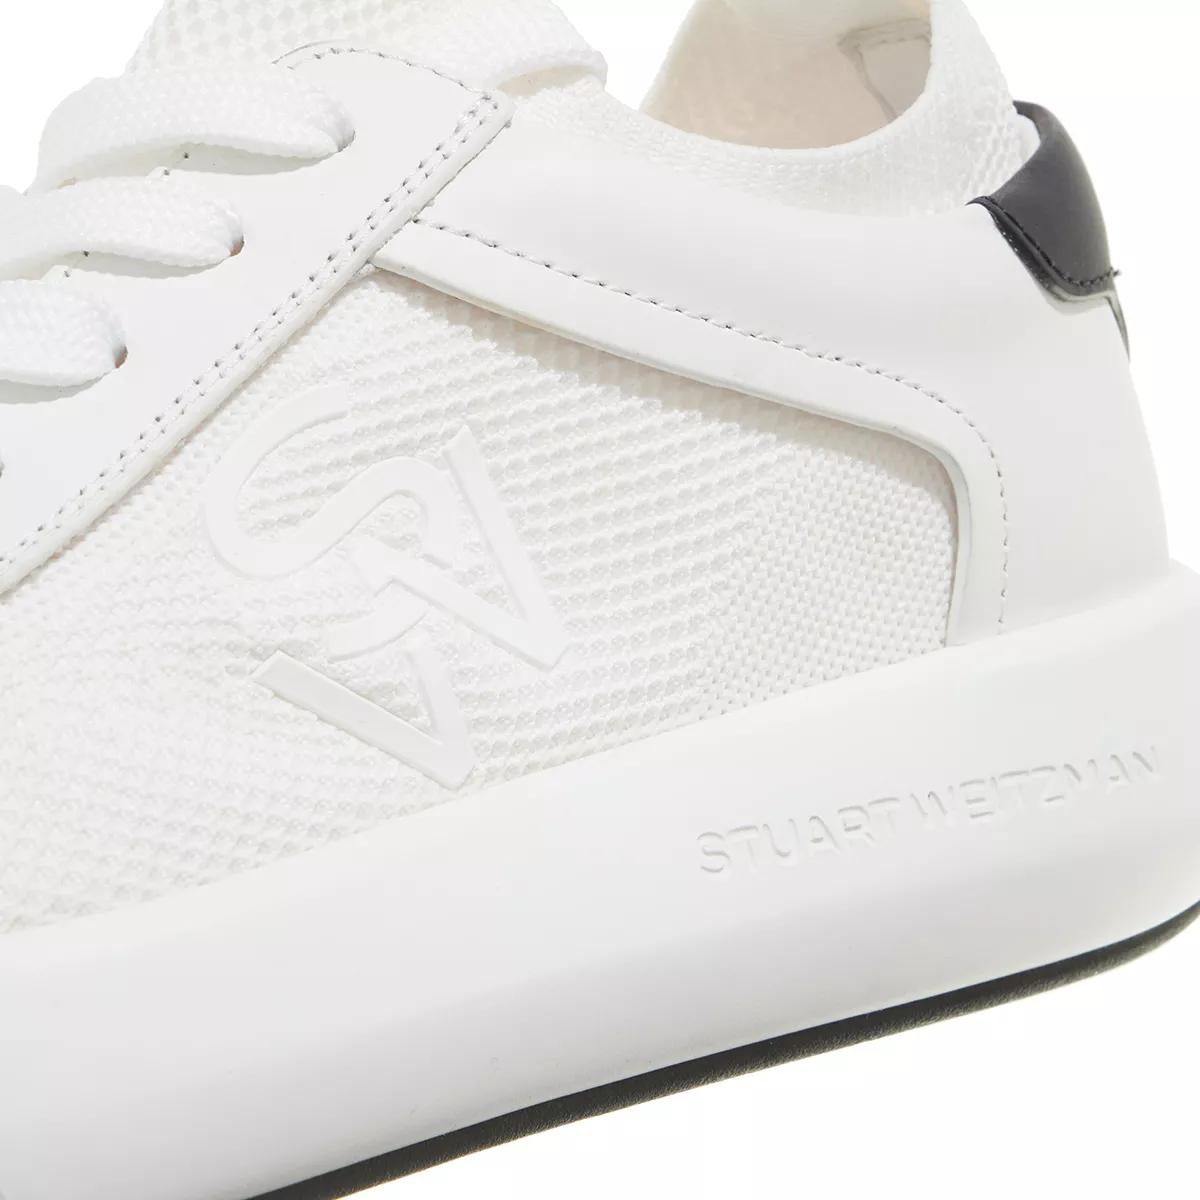 Stuart Weitzman Sneakers - 5050 PRO - Gr. 39 (EU) - in Weiß - für Damen von Stuart Weitzman